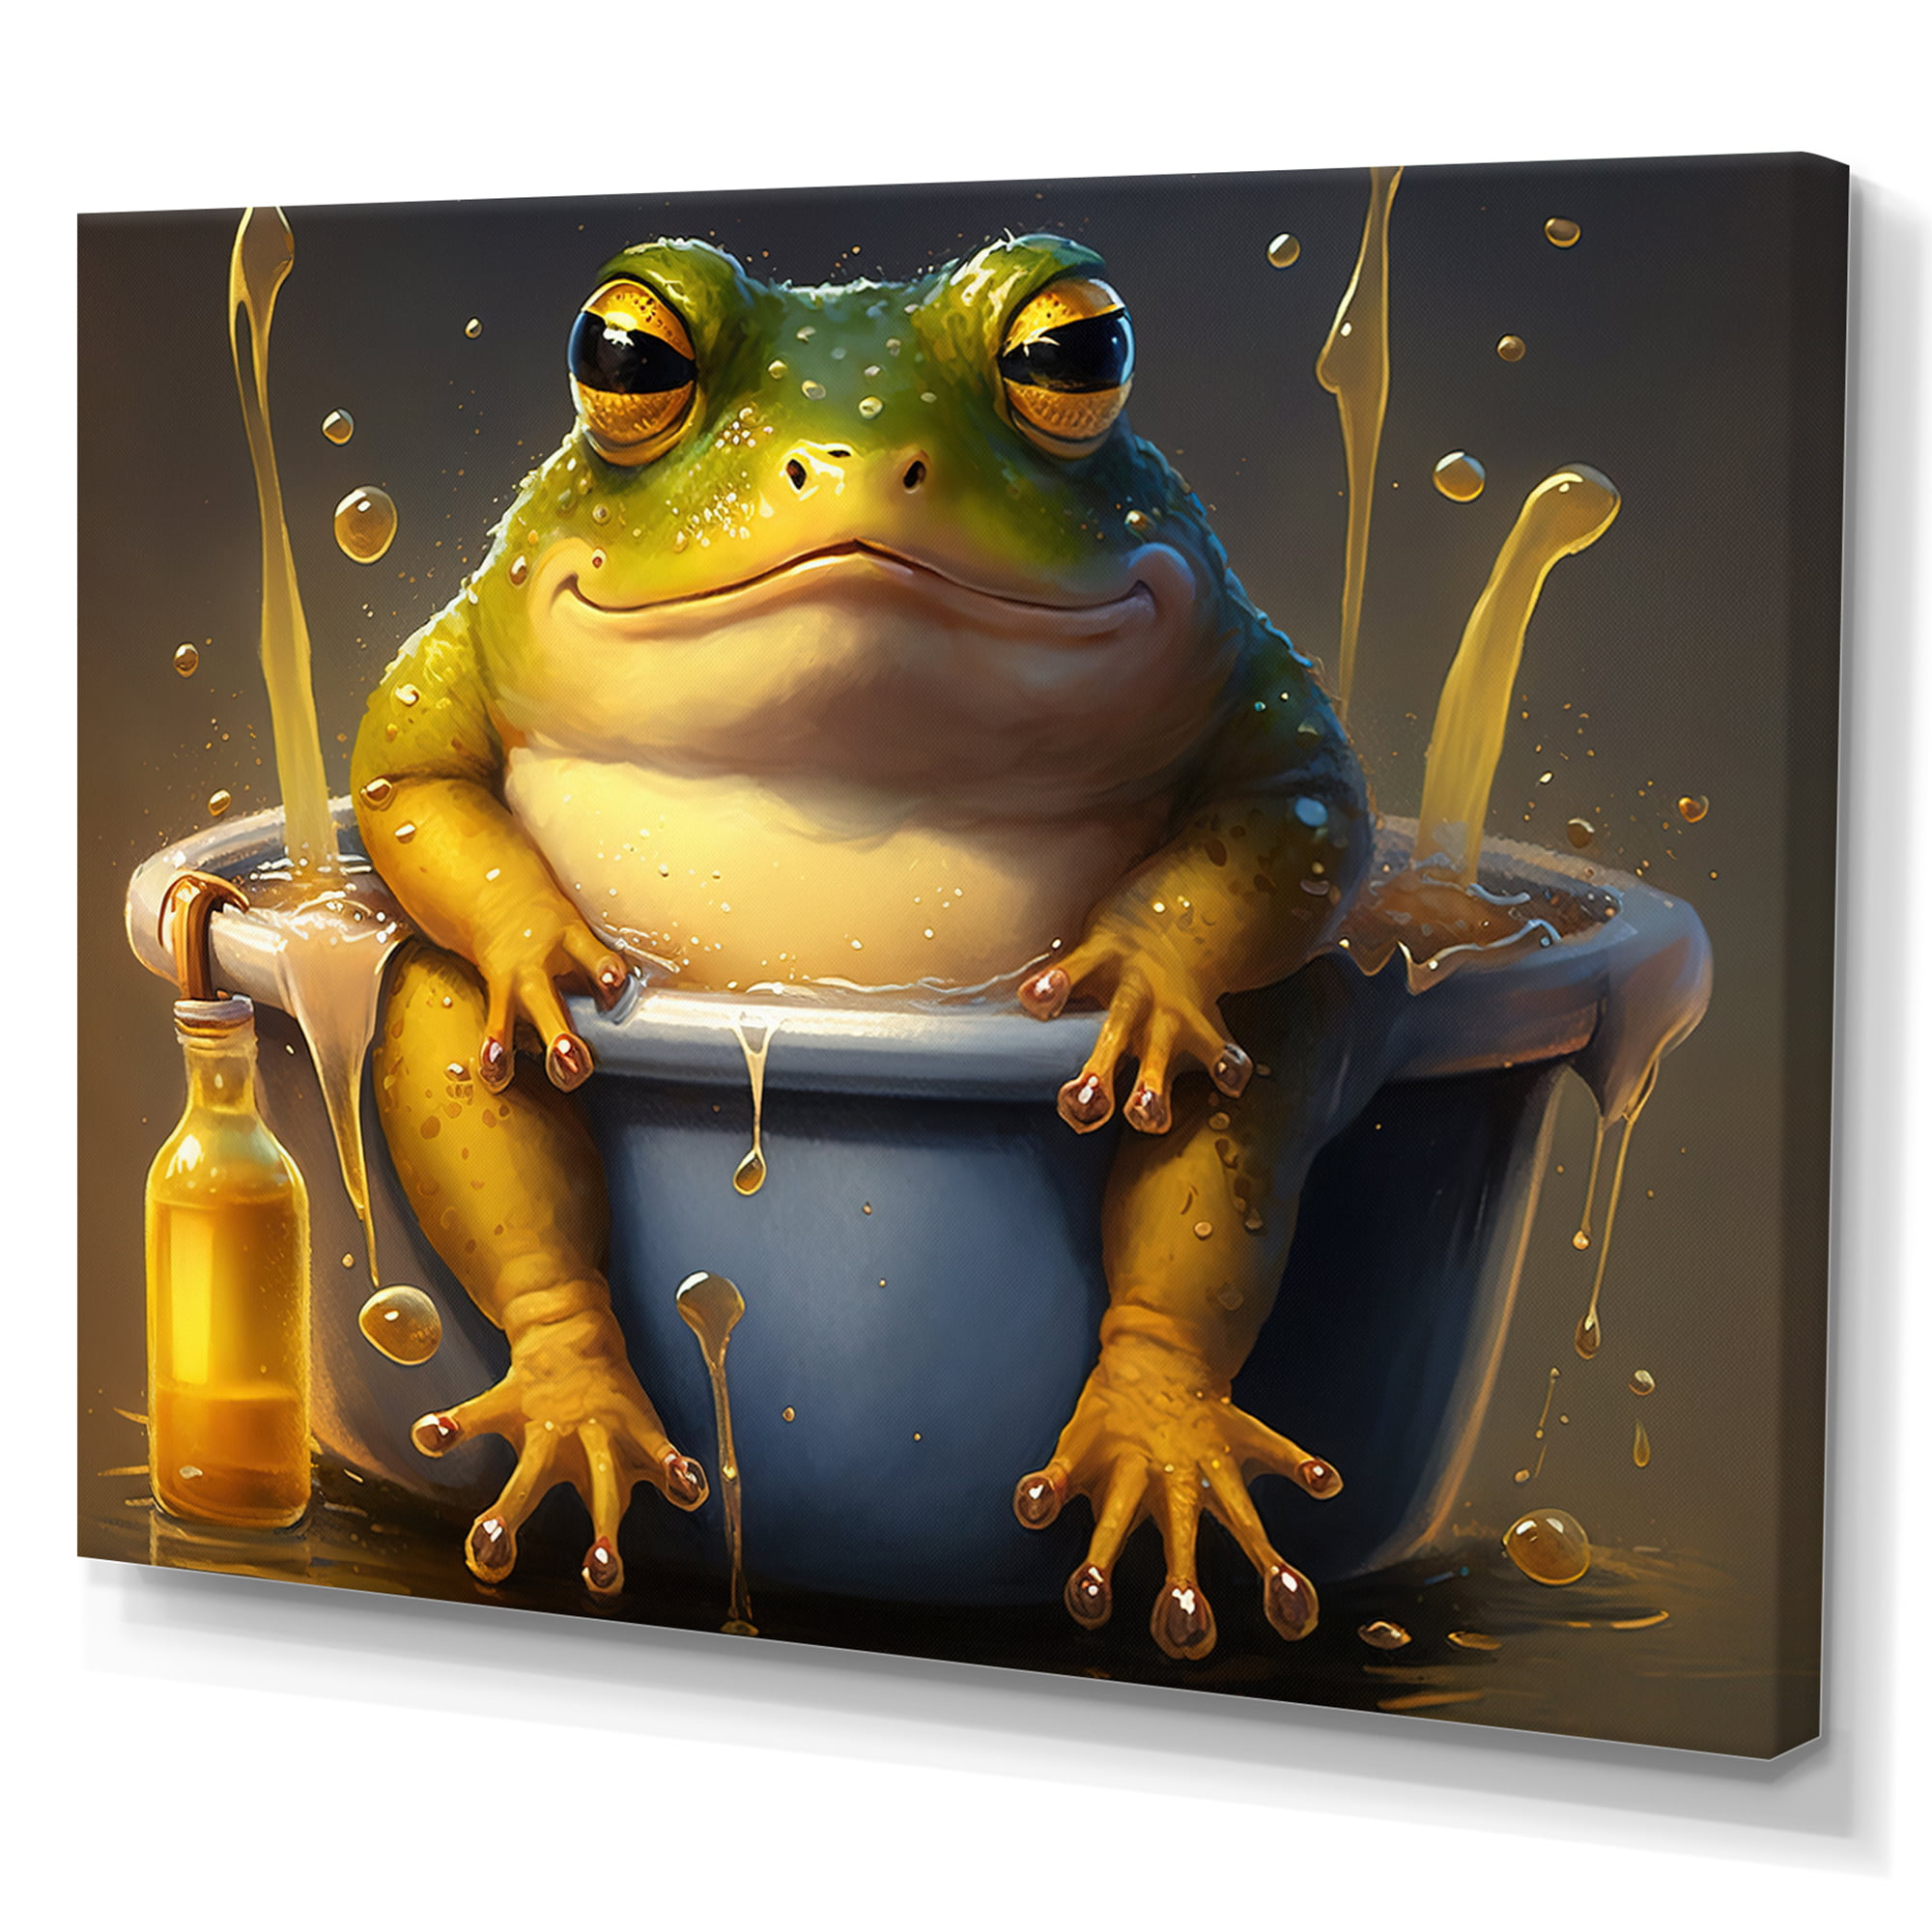 Frog Wall Decor Bathroom